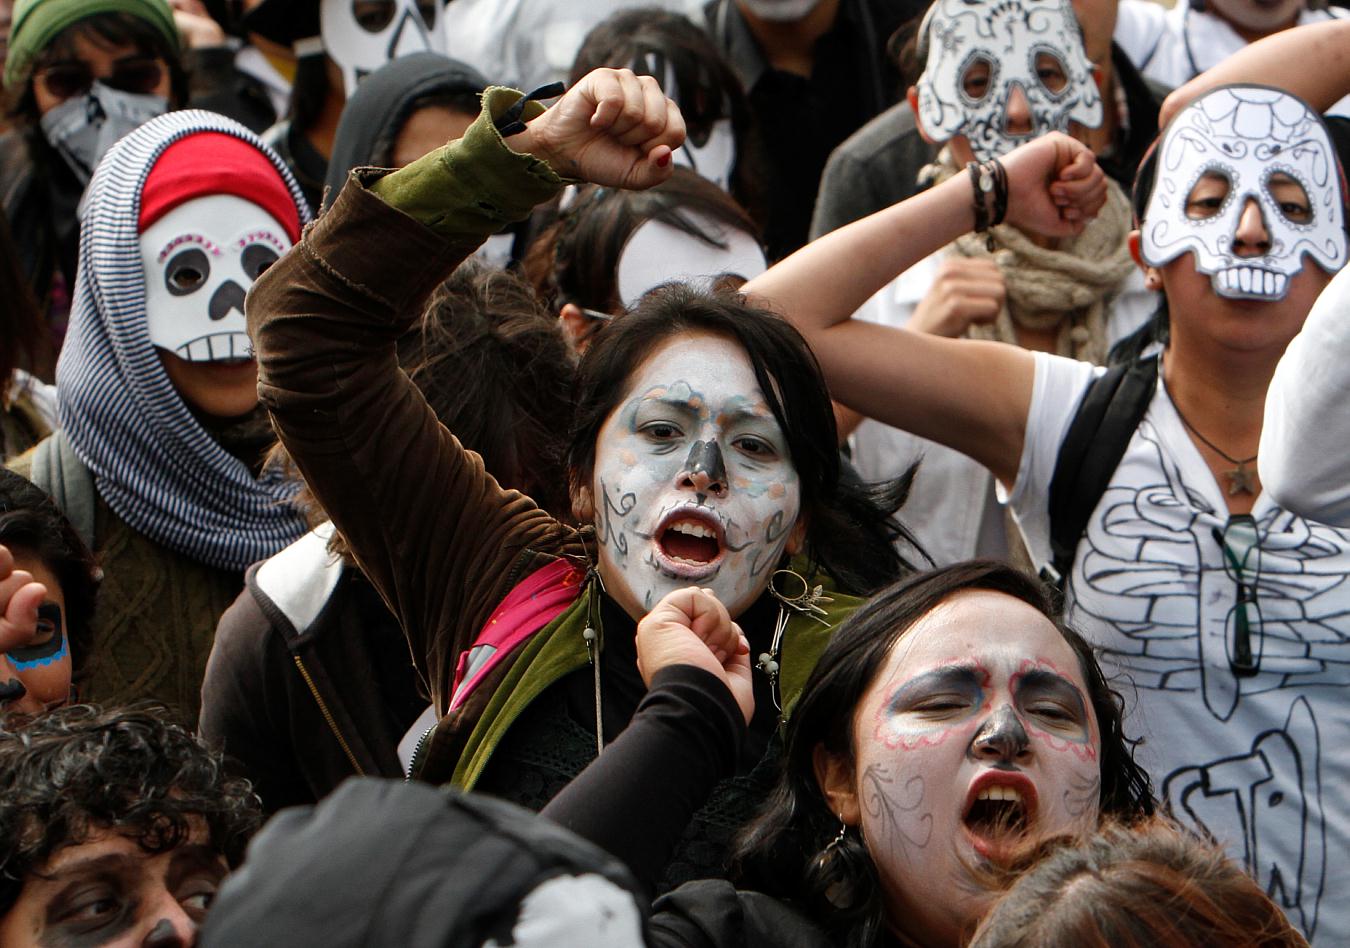 Demonstrators wore skull masks